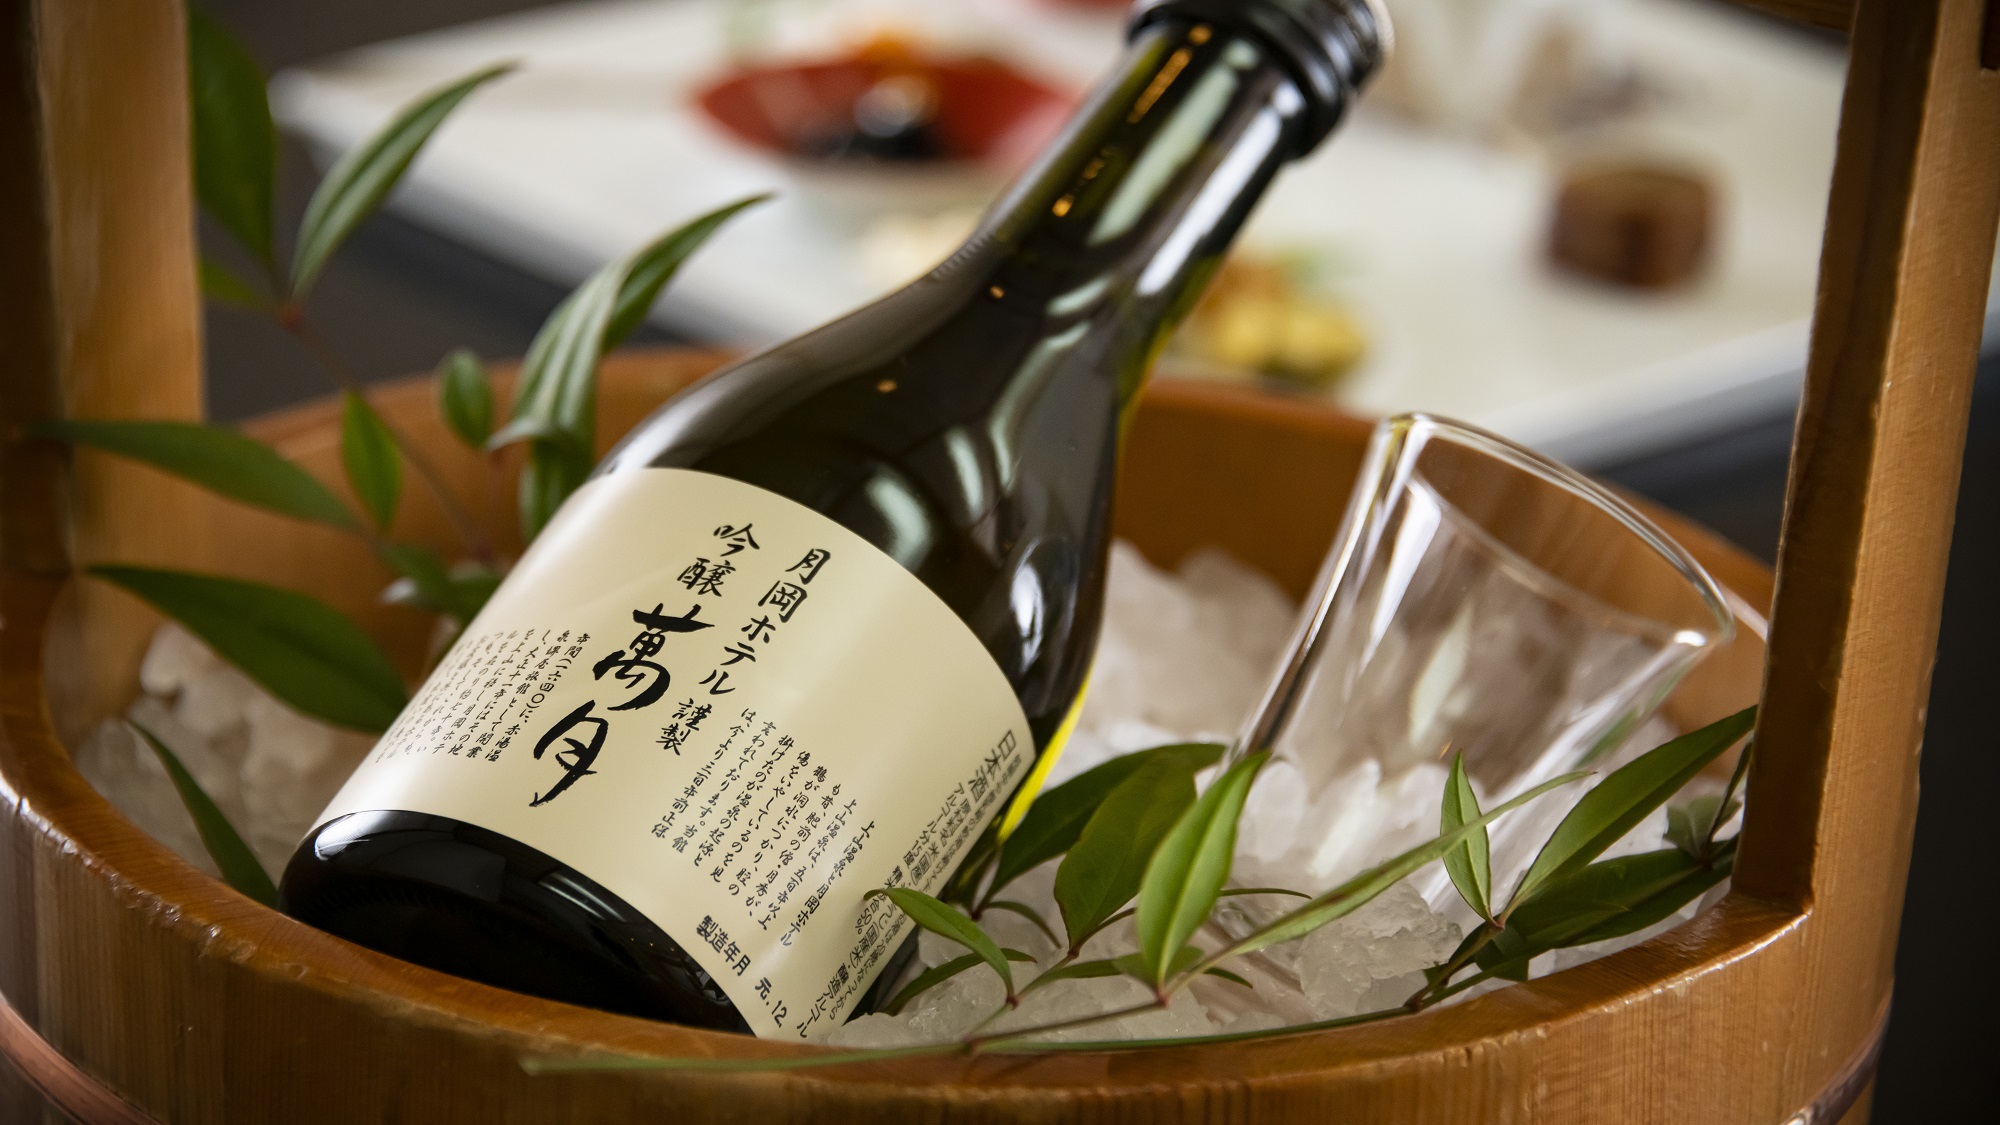 月岡ホテルオリジナル日本酒「萬月」山形の美味しい郷土の味とご一緒にどうぞ